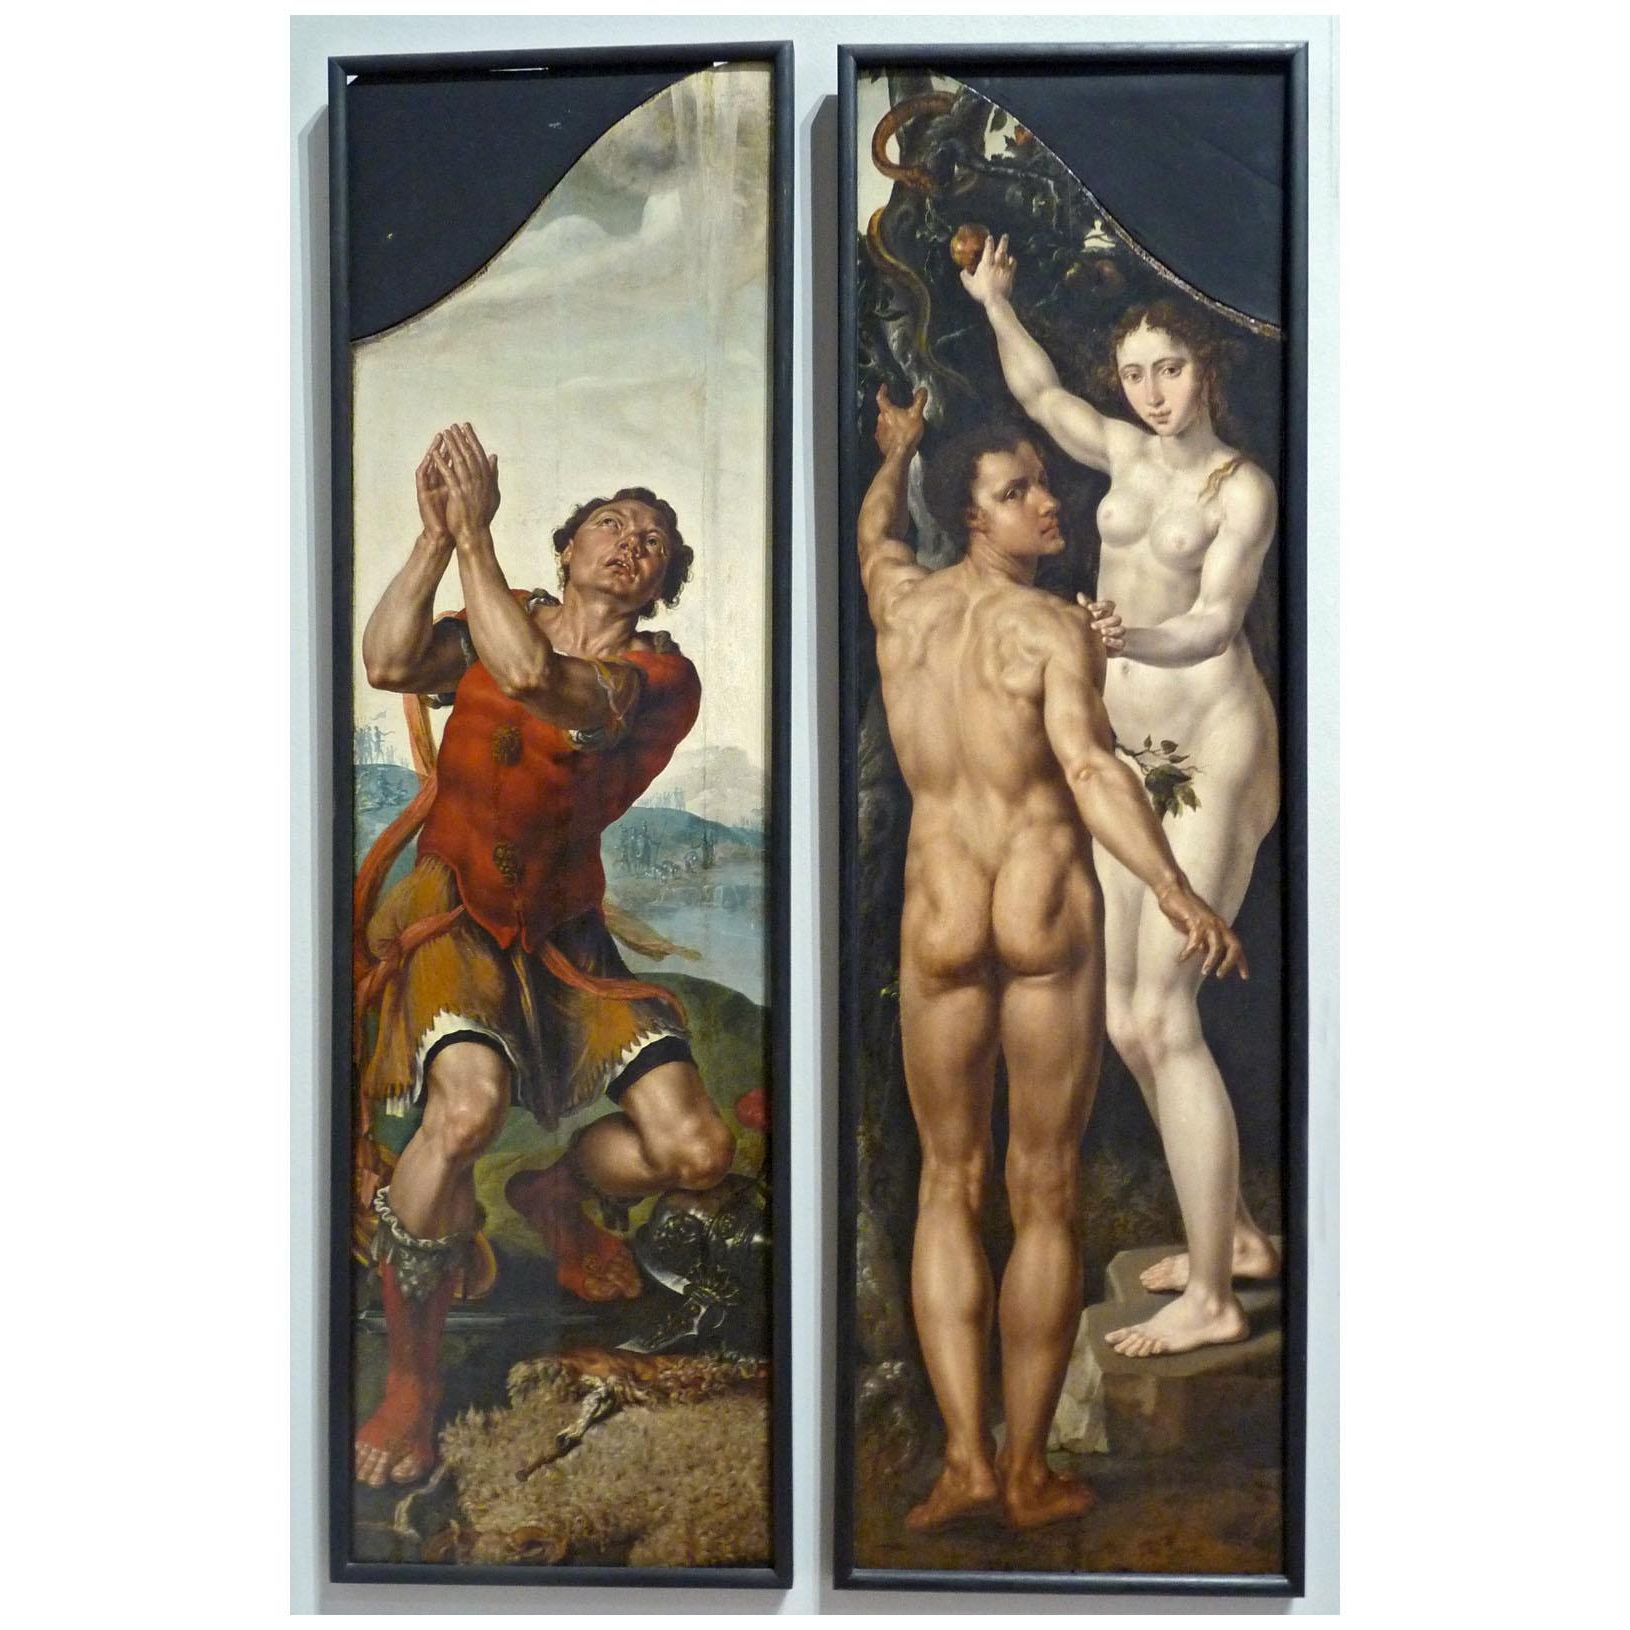 Maarten van Heemskerck. Gedeon / Adam and Eve. 1550. Palais Rohan MBA Strasbourg